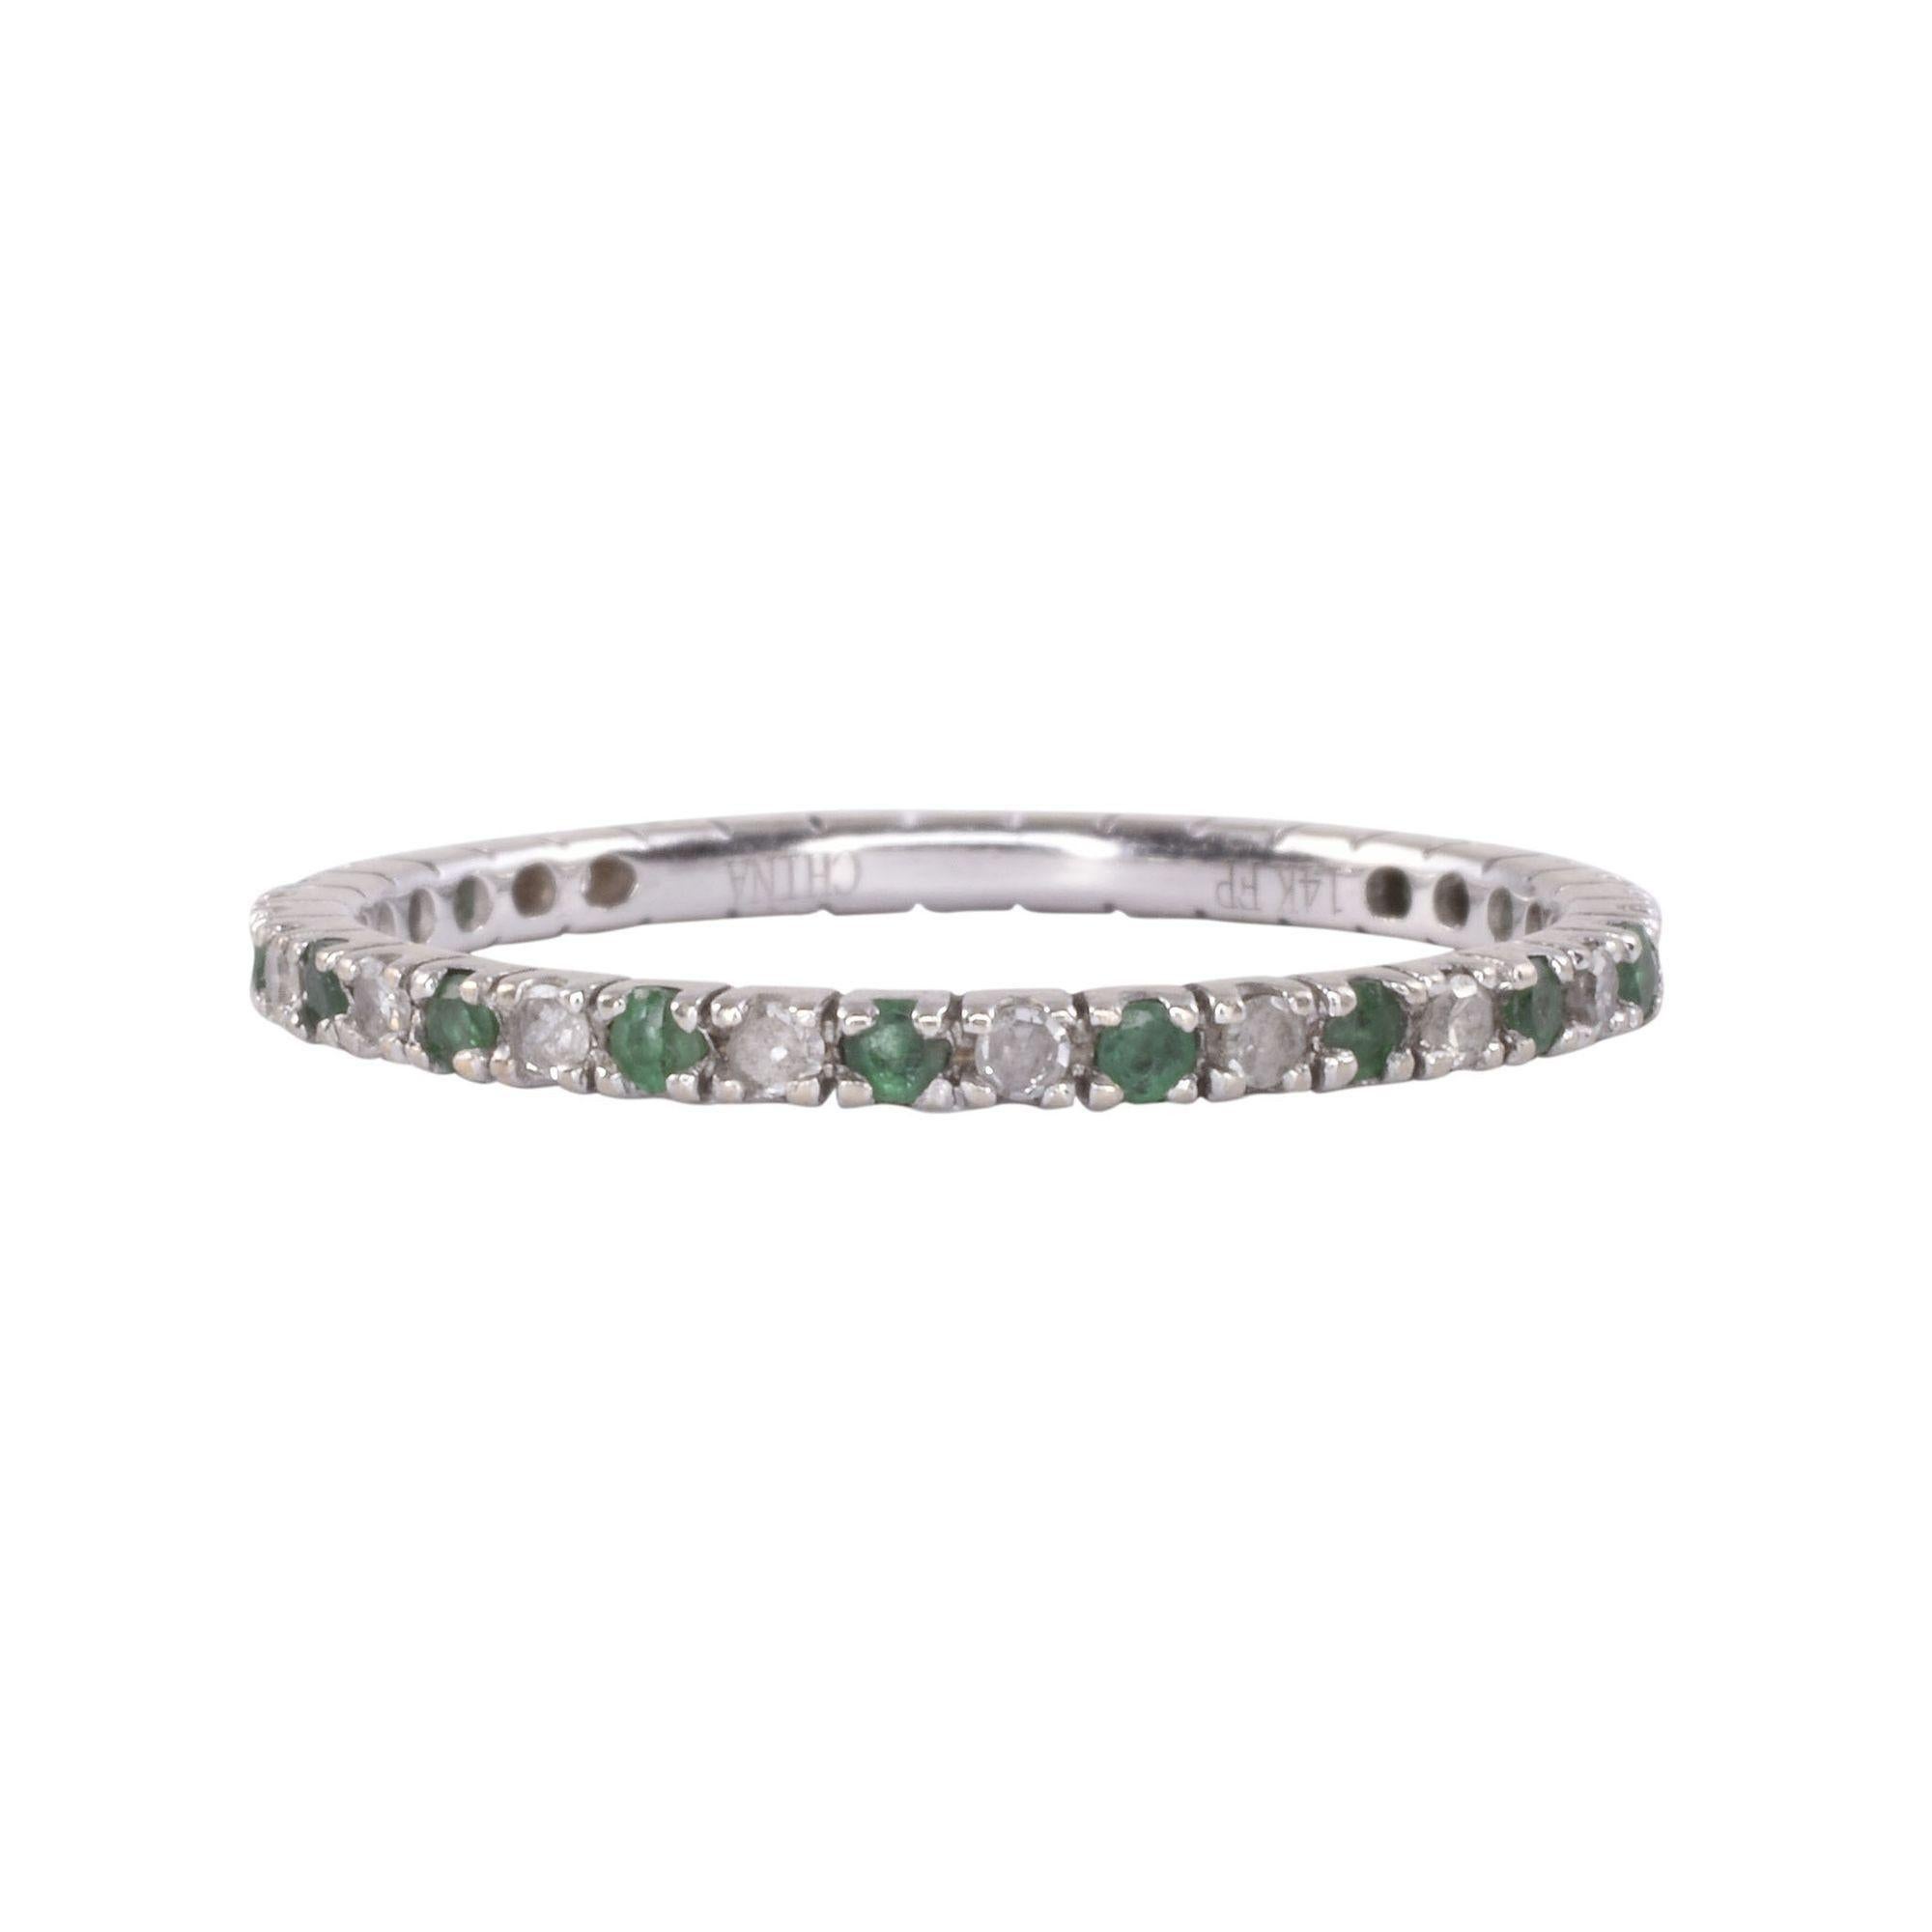 Bracelet d'éternité vintage en émeraude et diamant, circa 1960. Ce bracelet d'éternité en or blanc 14 carats présente une alternance d'émeraudes et de diamants. Les émeraudes pèsent 0,17 carat et les diamants 0,20 carat. Les diamants ont une pureté